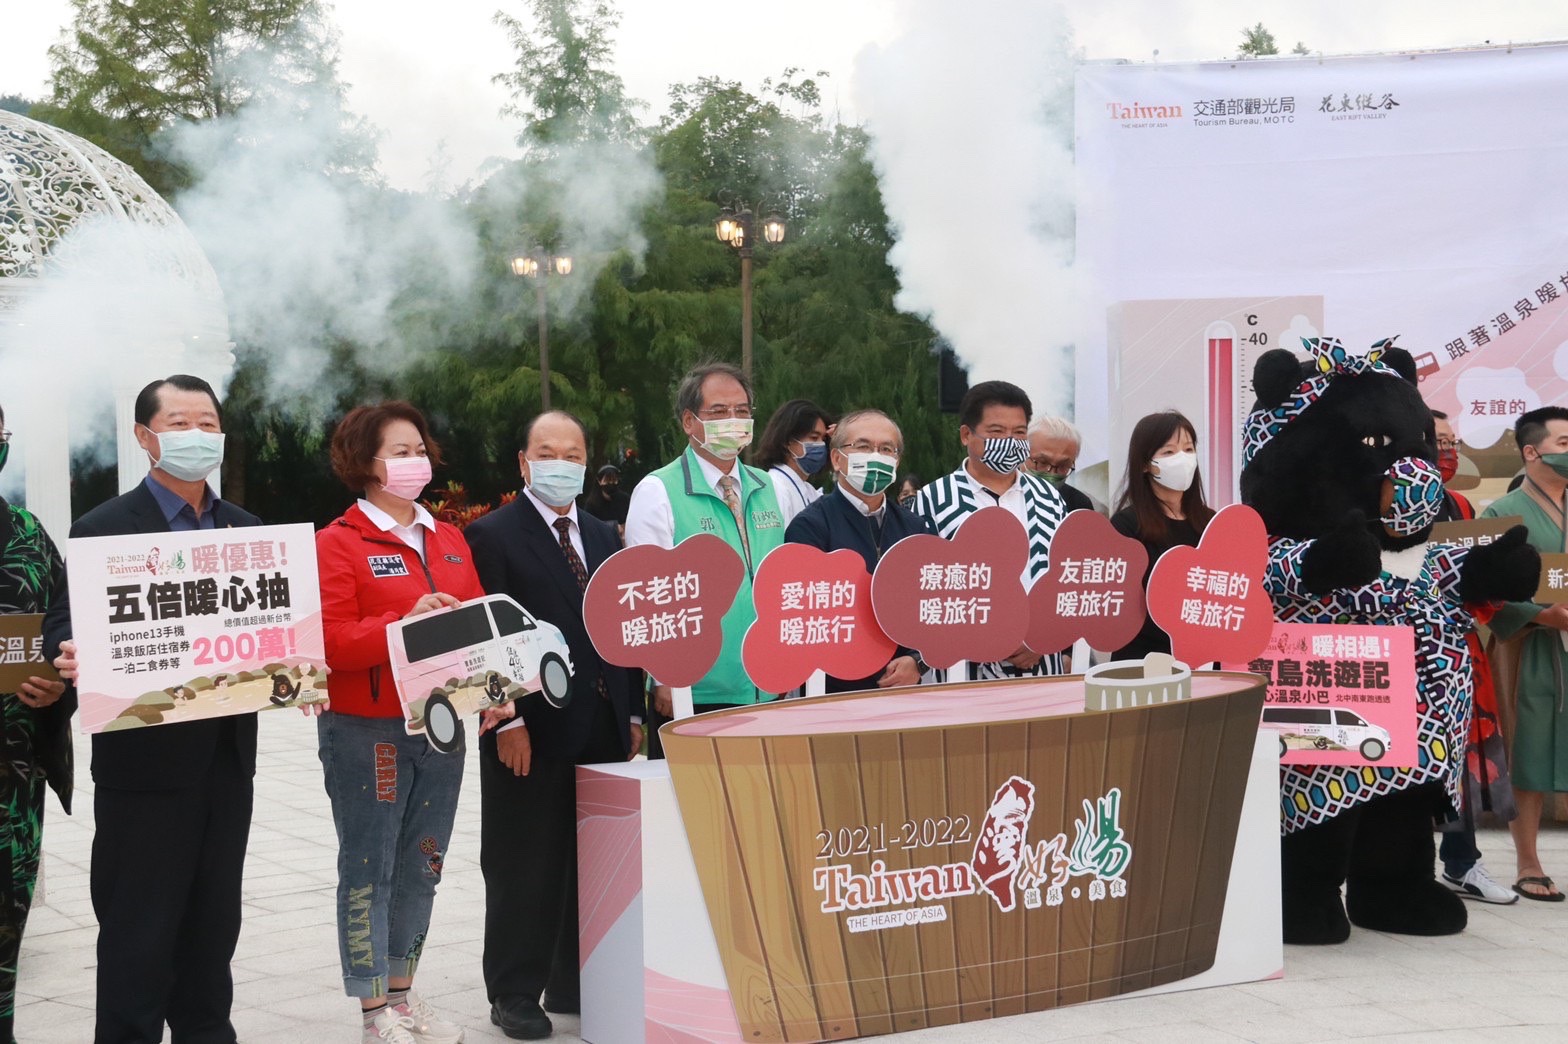 觀光局以健康40度C的概念推廣台灣好湯品牌